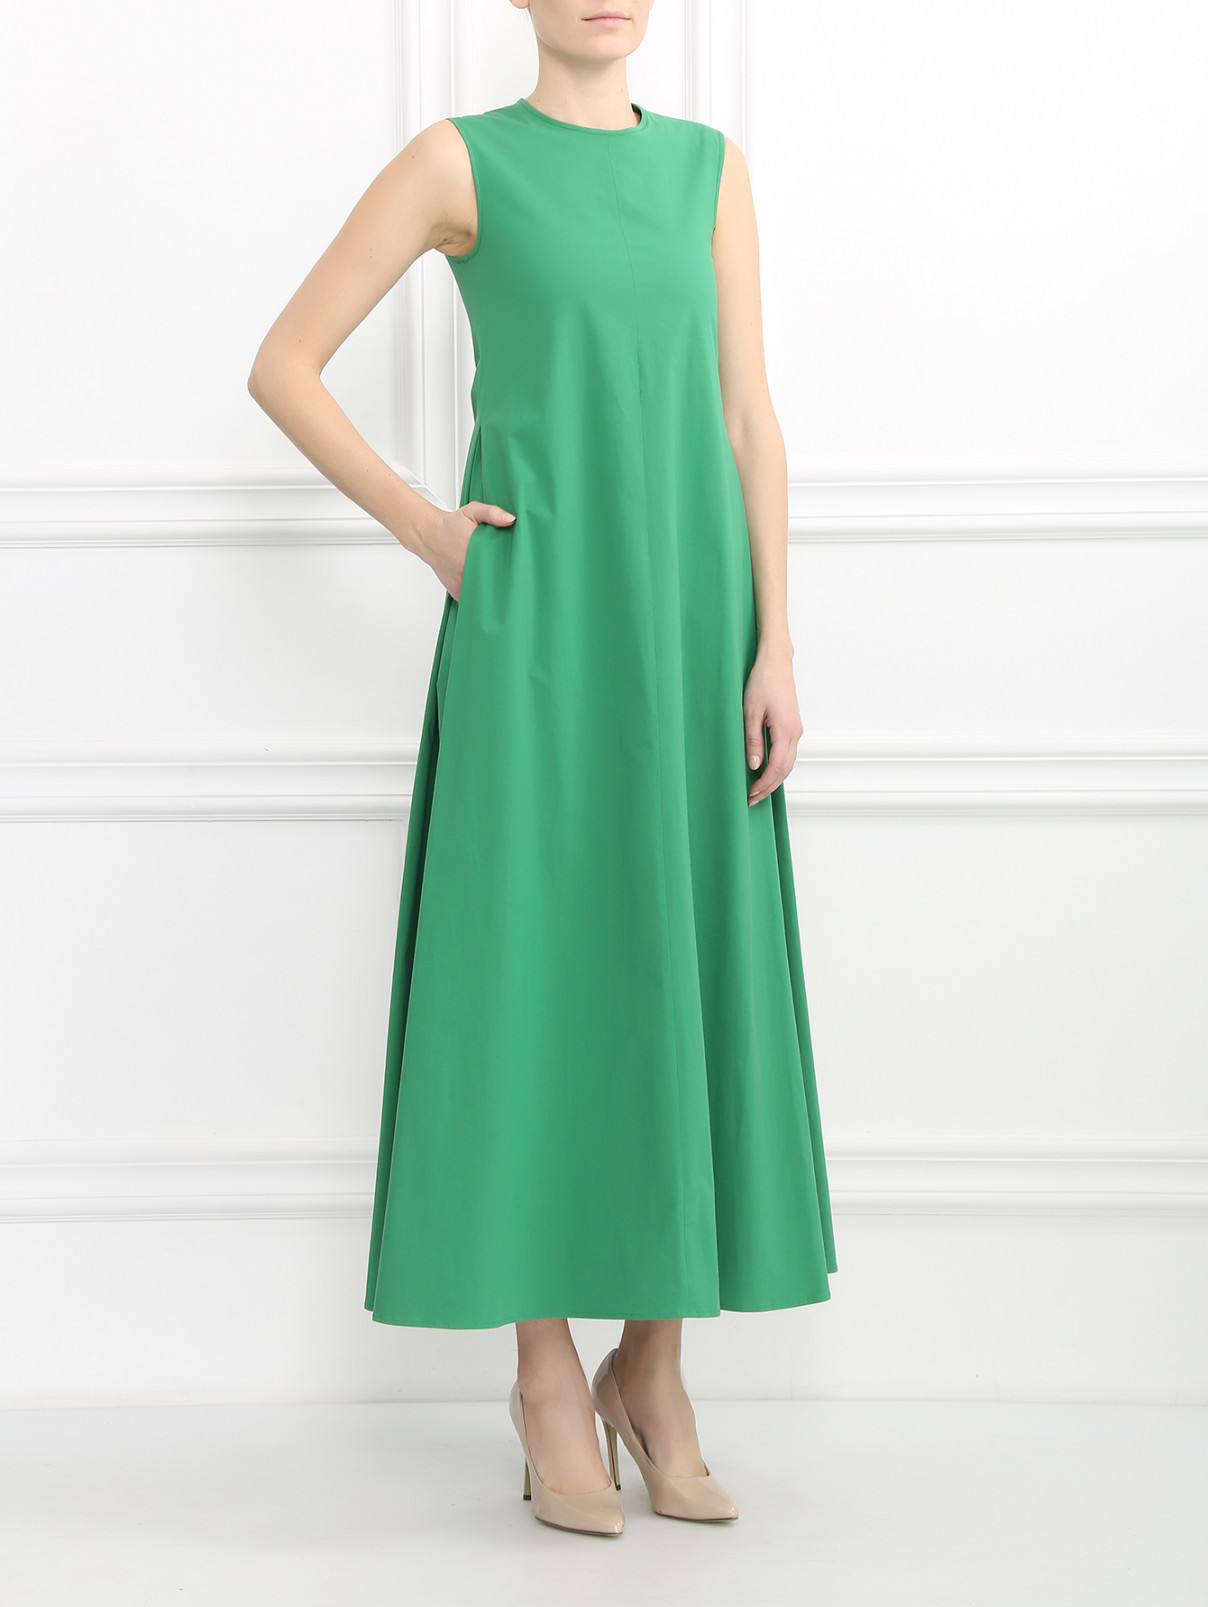 Платье-макси из хлопка S Max Mara  –  Модель Общий вид  – Цвет:  Зеленый